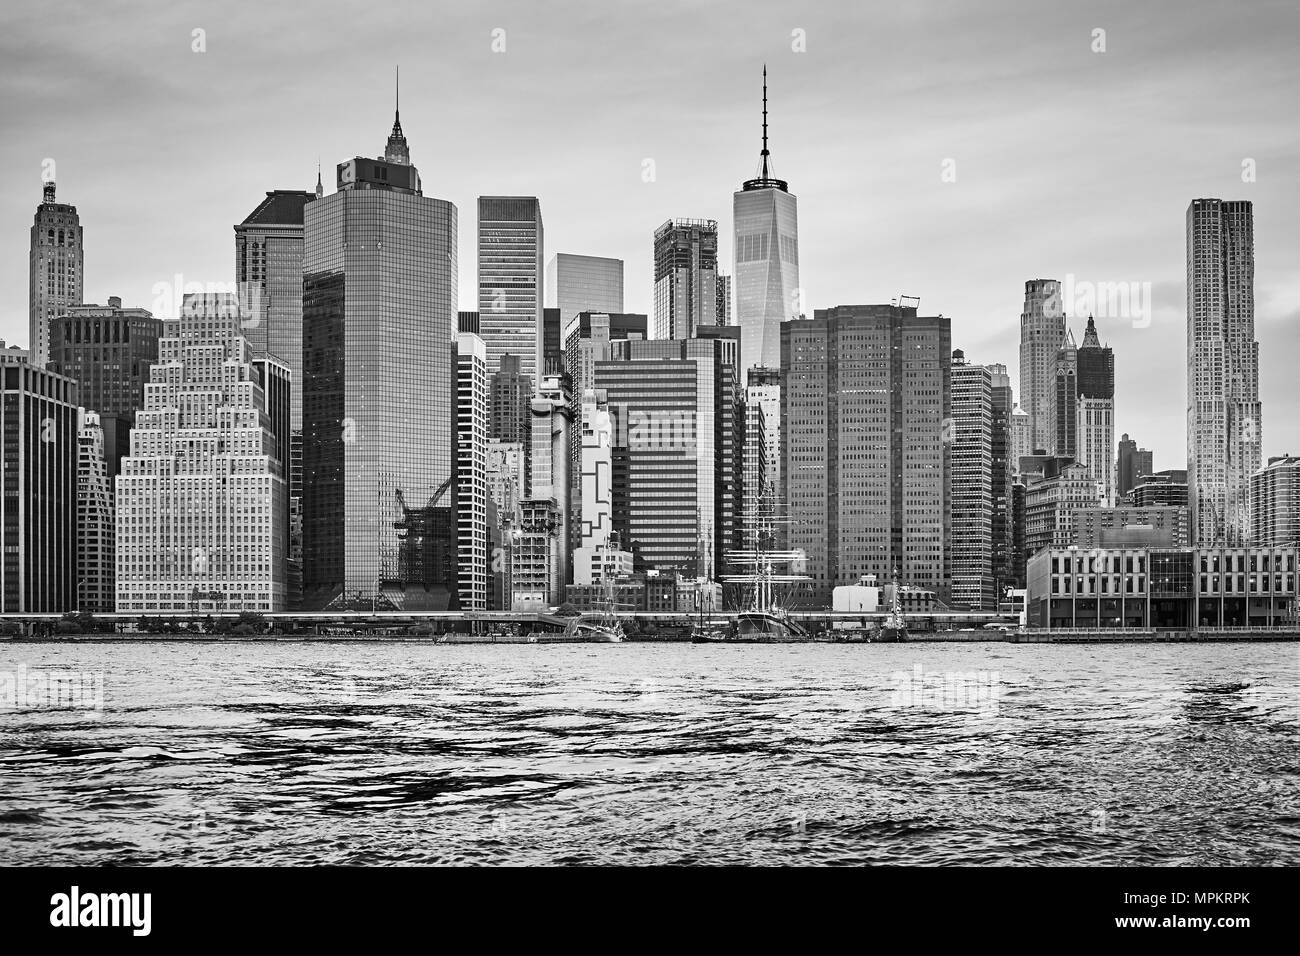 Schwarz-weiß Bild der Skyline von Manhattan bei Sonnenuntergang, New York  City, USA Stockfotografie - Alamy